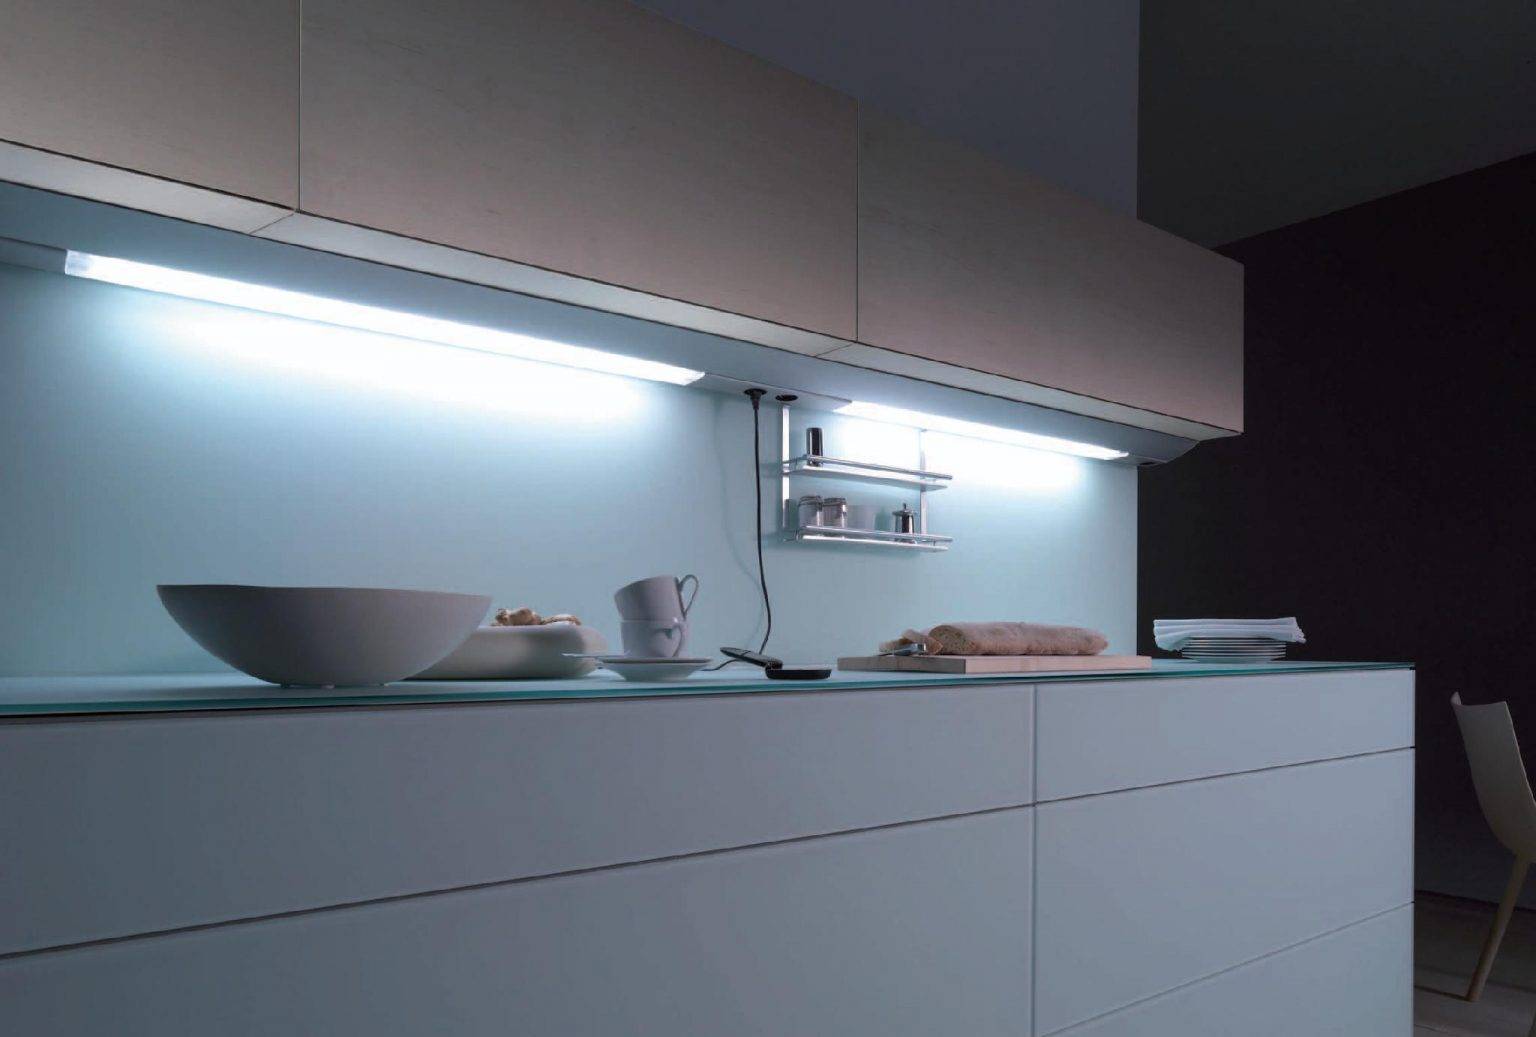 Подсветка для кухни под шкафы: светильники, софиты, диодная лента